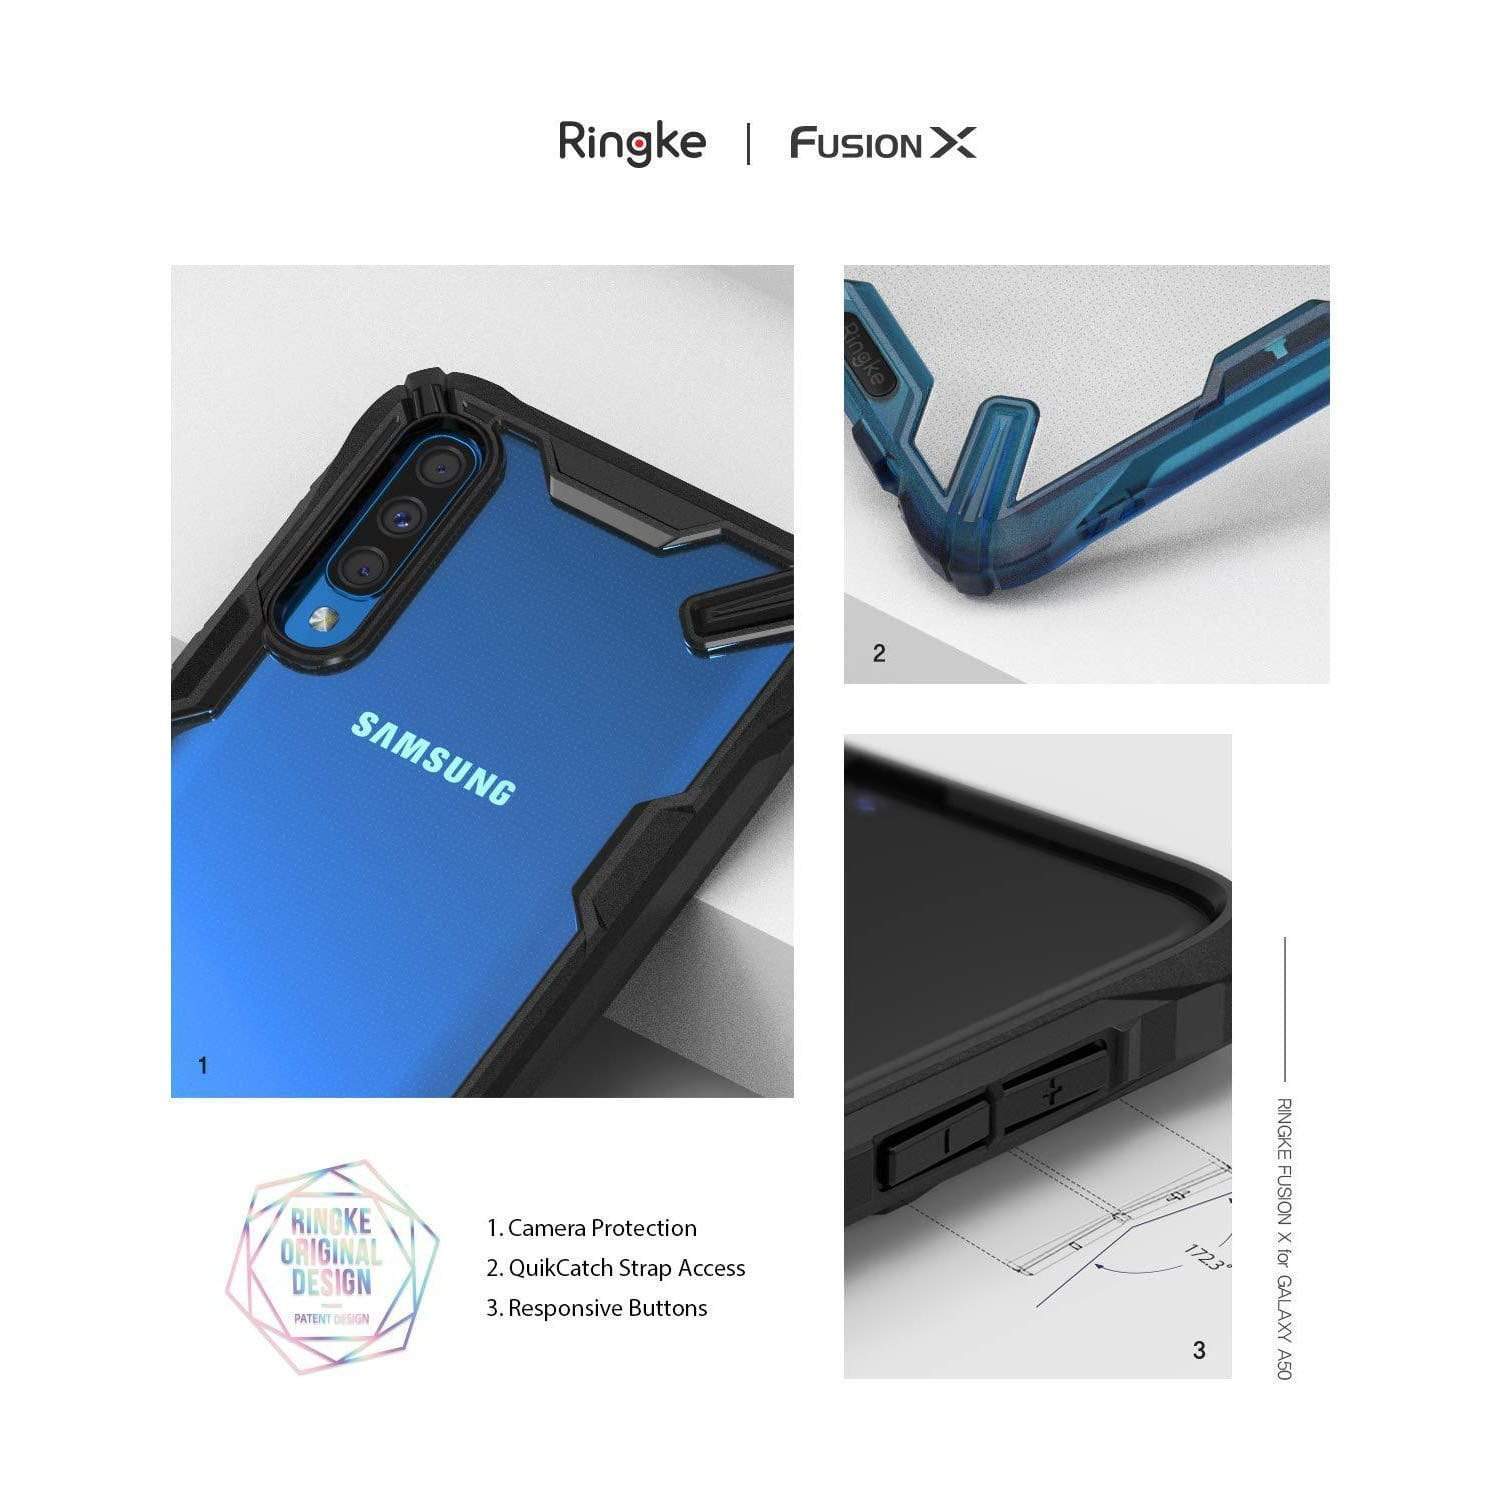 Combo Estuche Vidrio Flexible Ringke Fuxion X Samsung Galaxy A50 / A30s / A50s Lanch Accesorios Originales